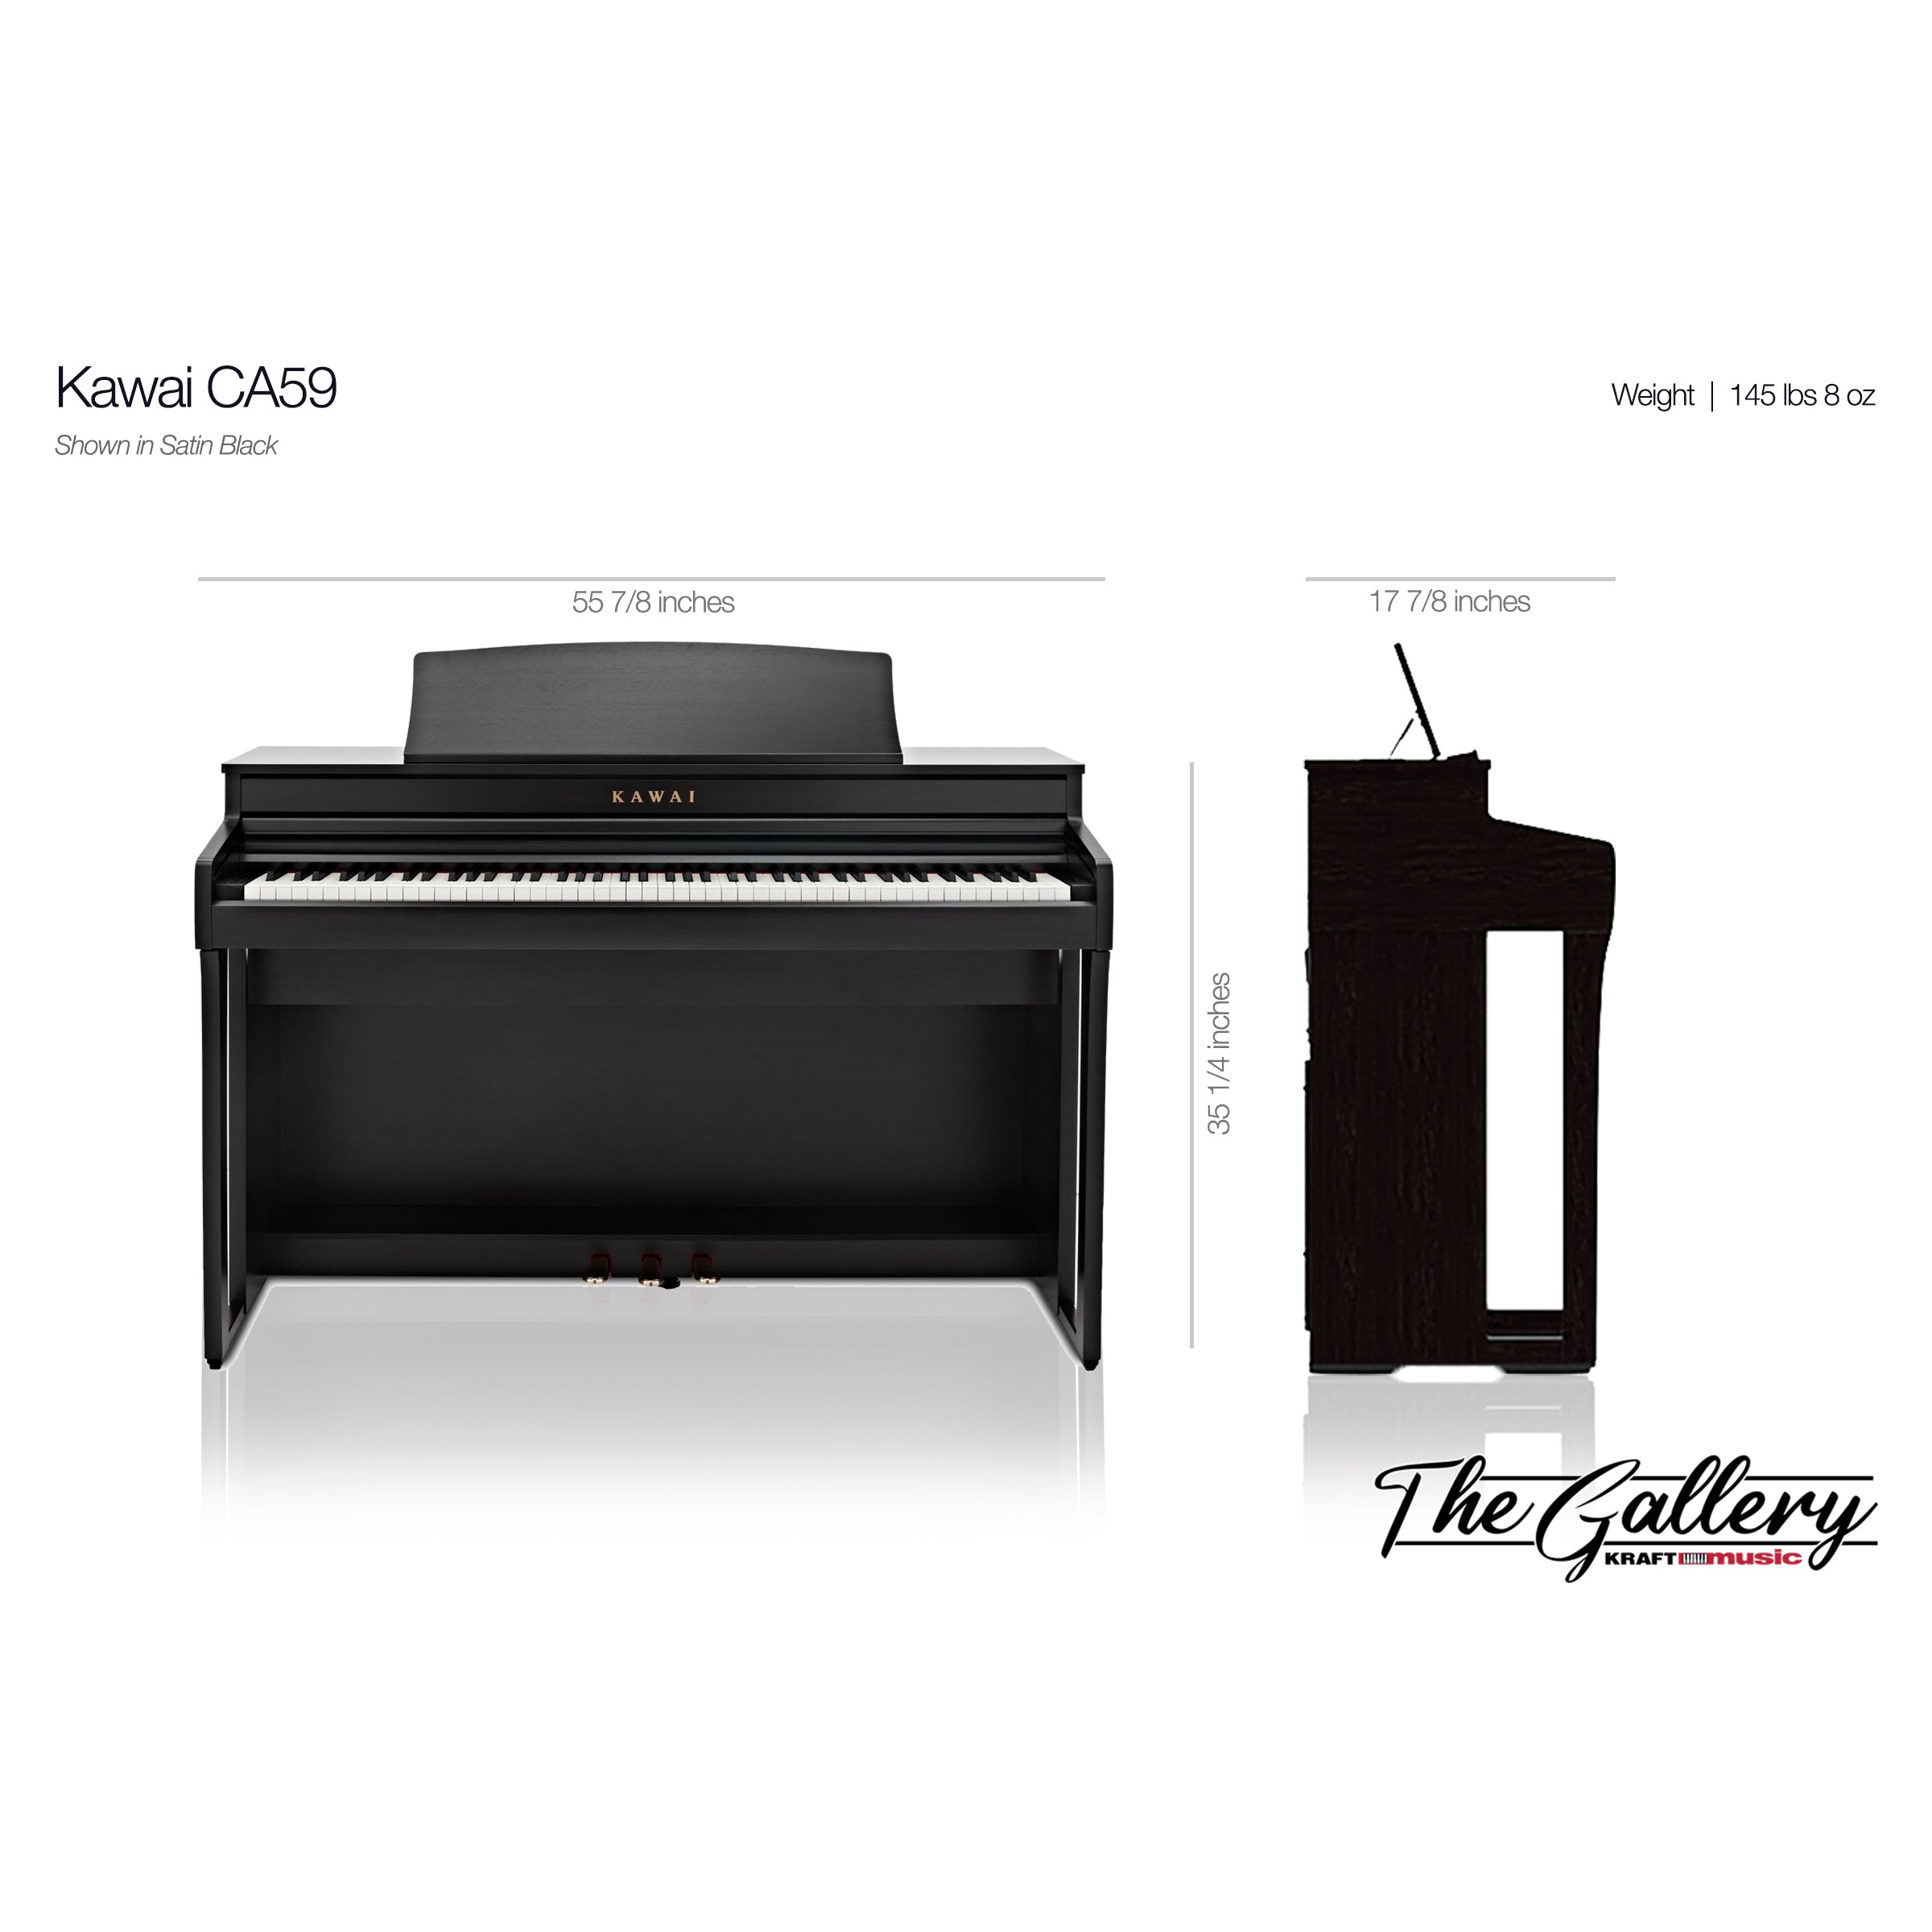 Kawai CA59 Digital Piano - Dimensions 